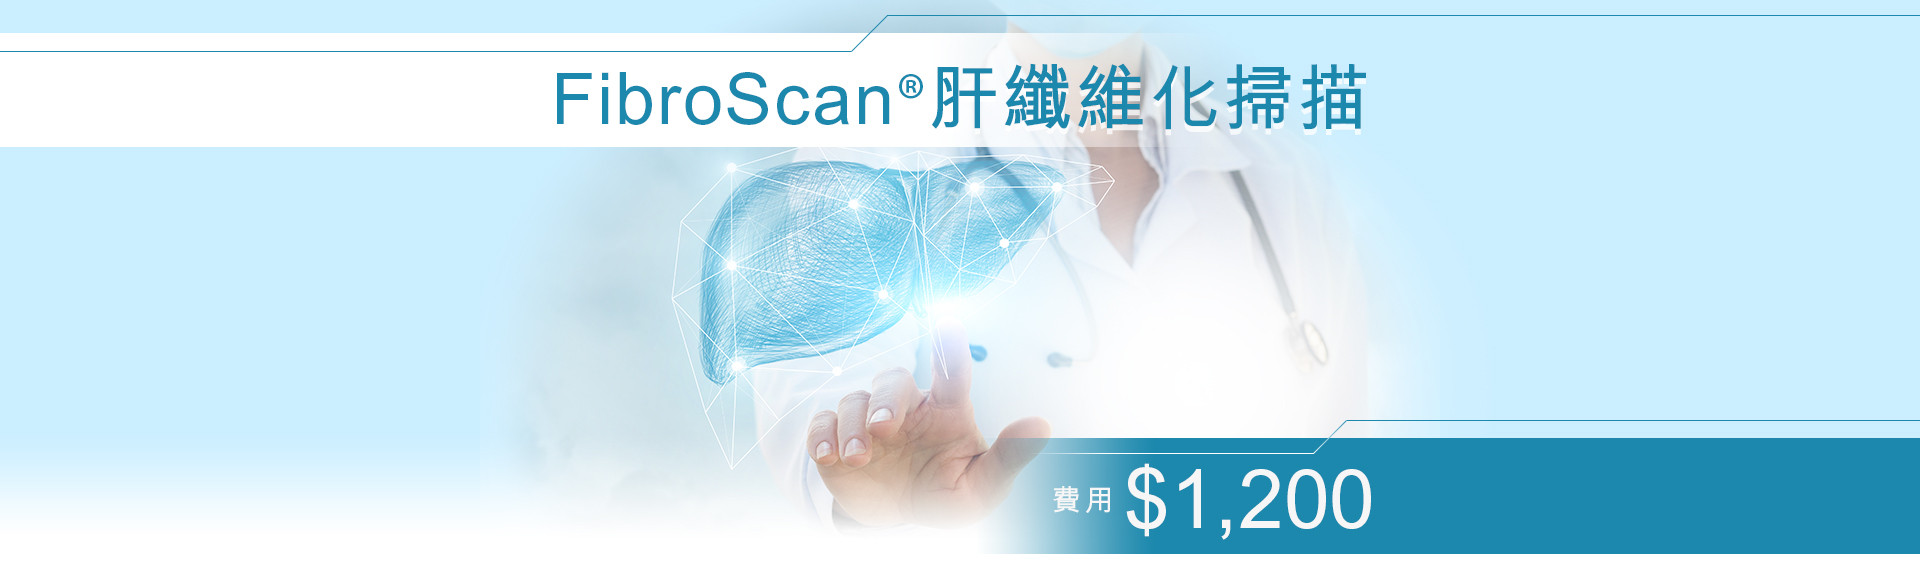 無創脂肪肝及肝纖維化檢查 - FibroScan®肝纖維化掃描